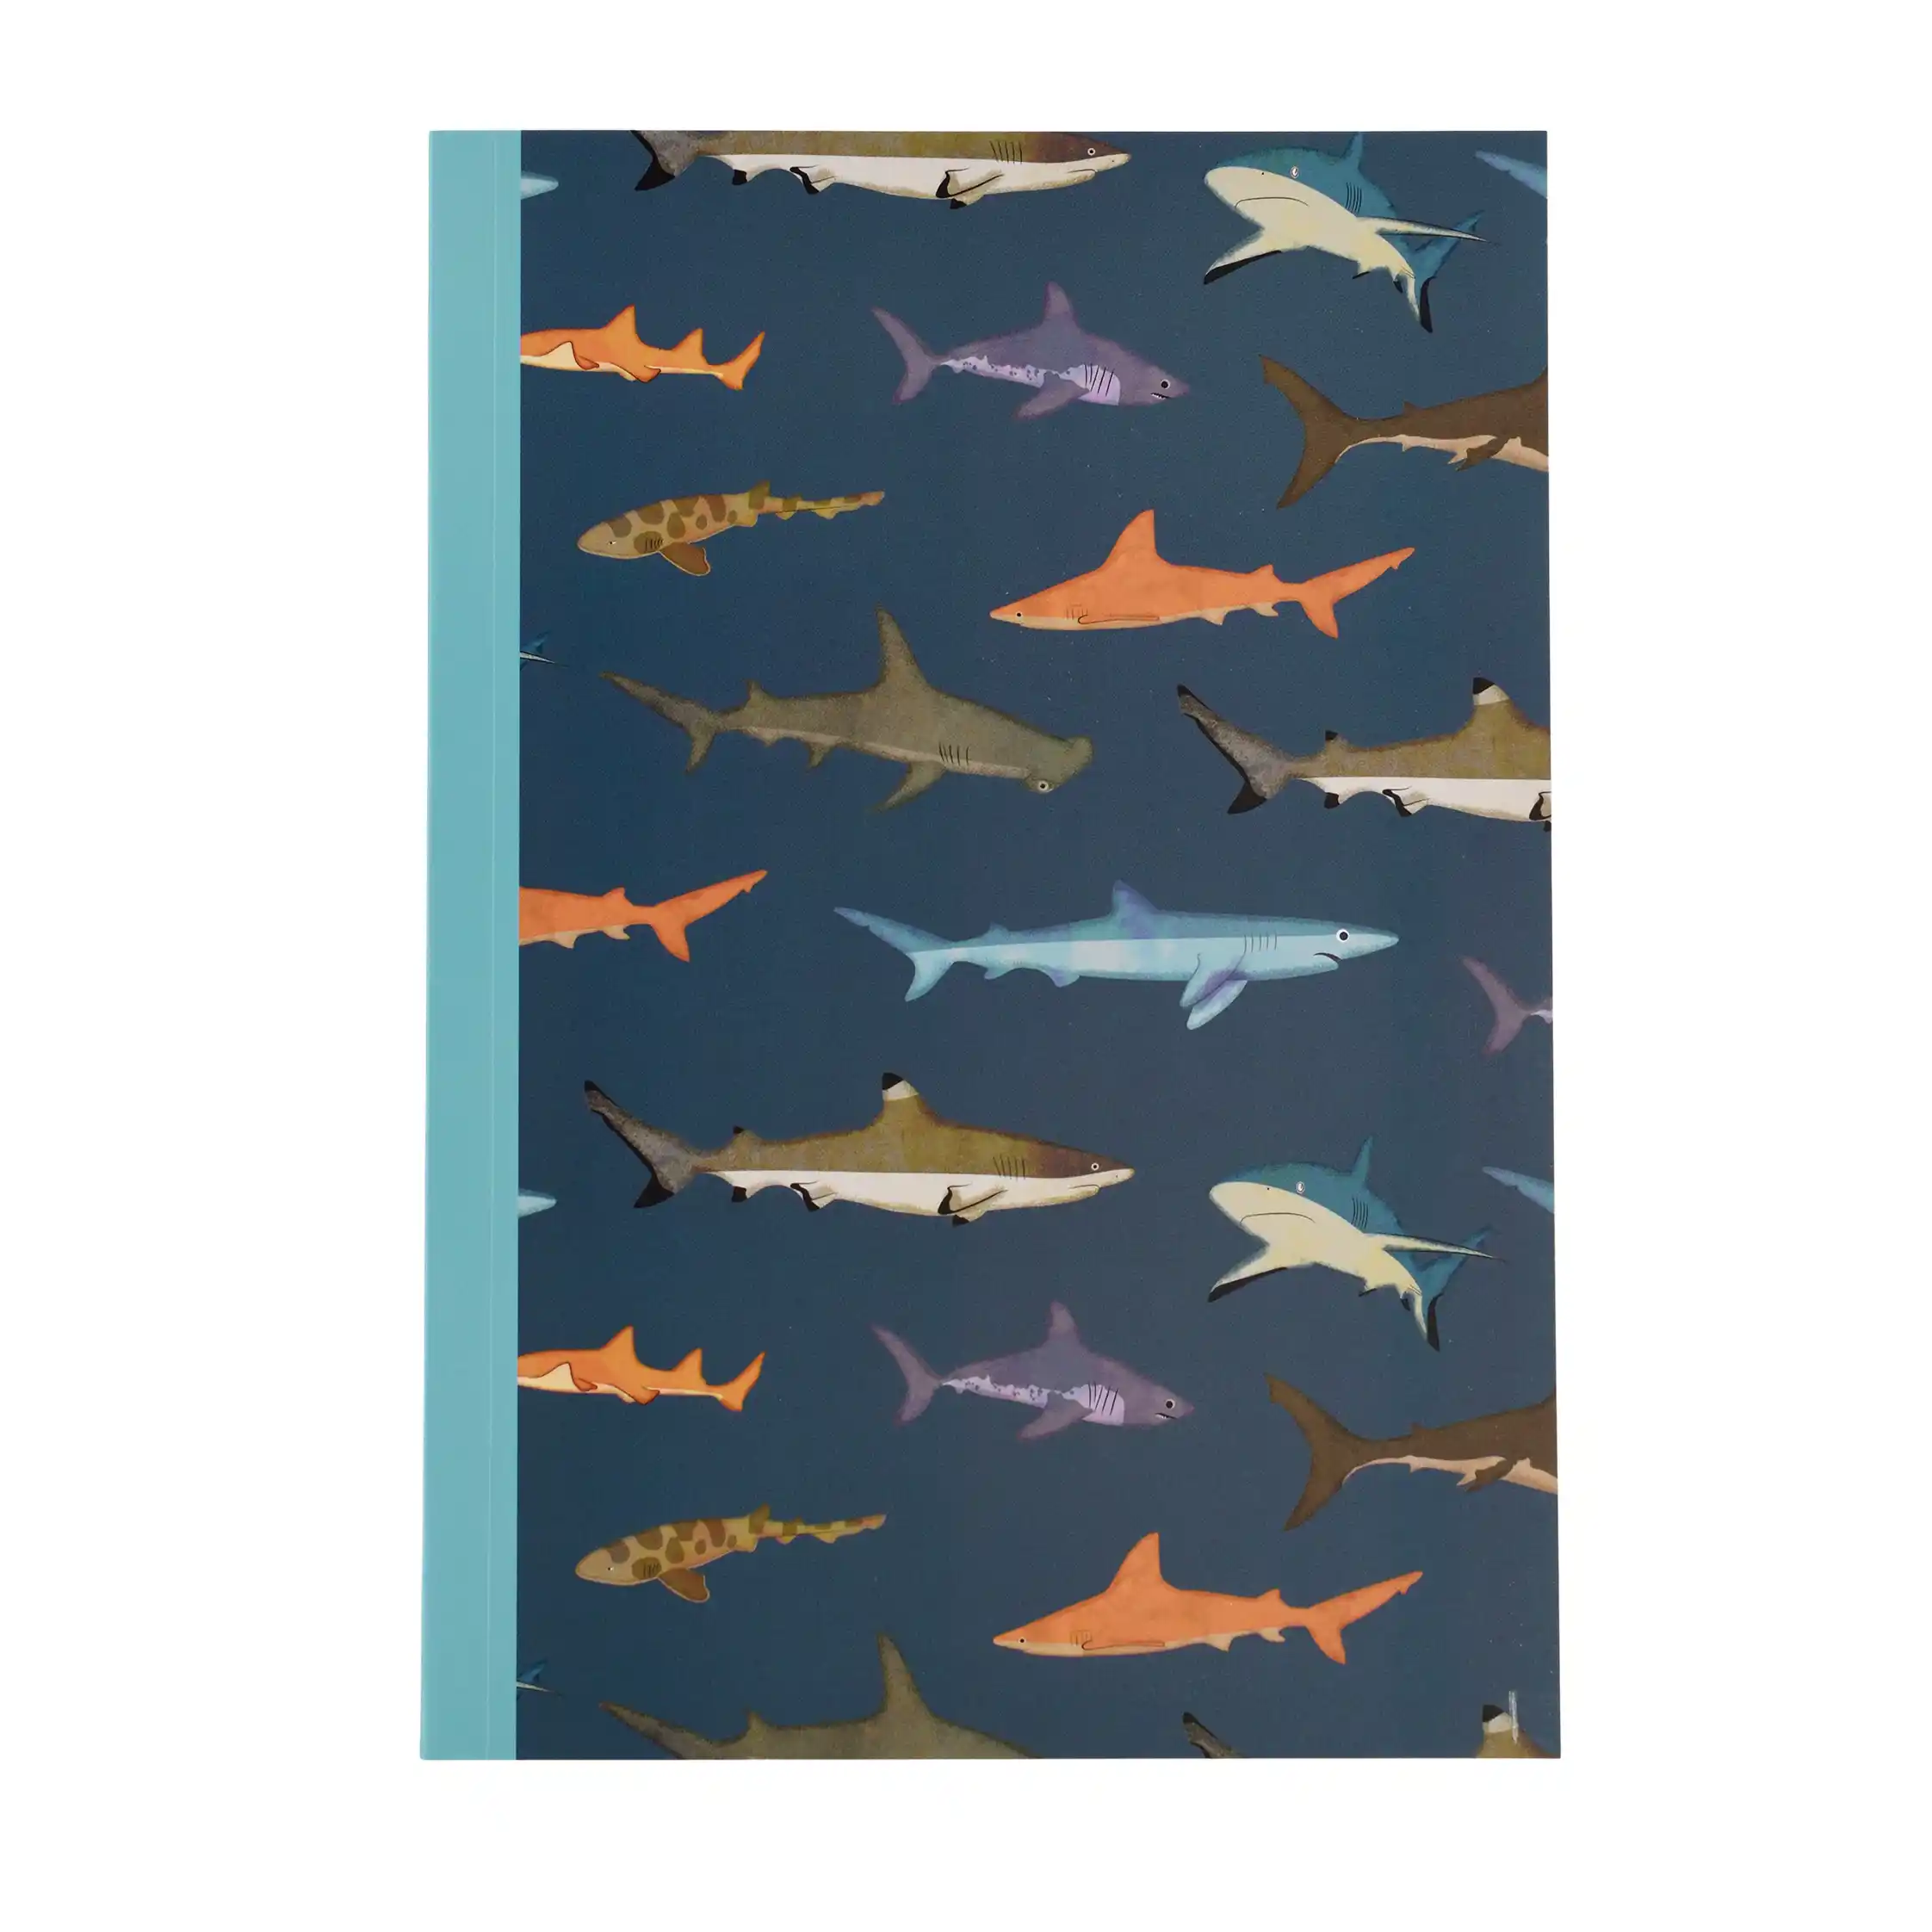 cuaderno rayas a5 sharks